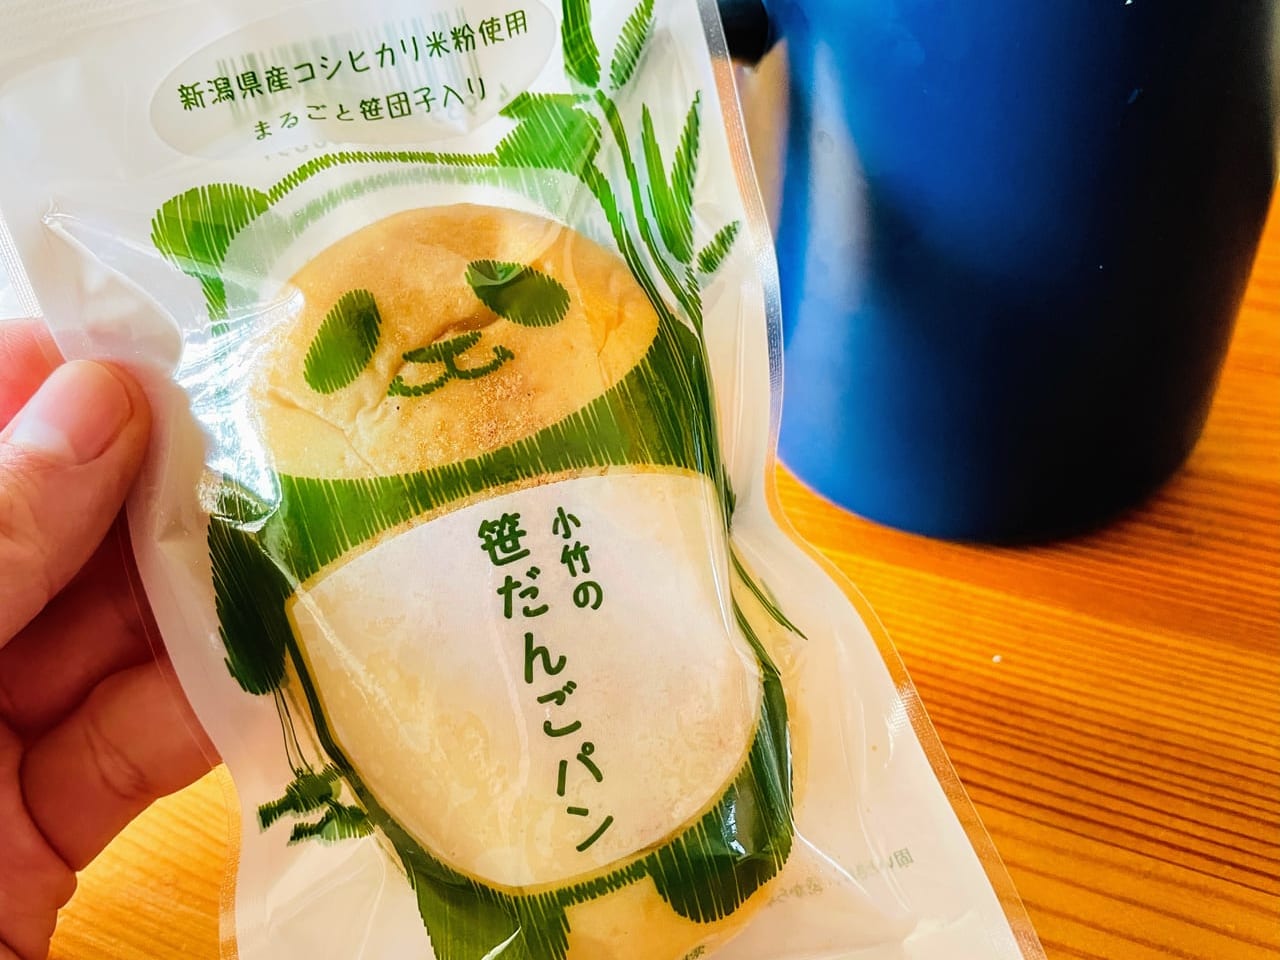 小竹製菓の笹団子パン